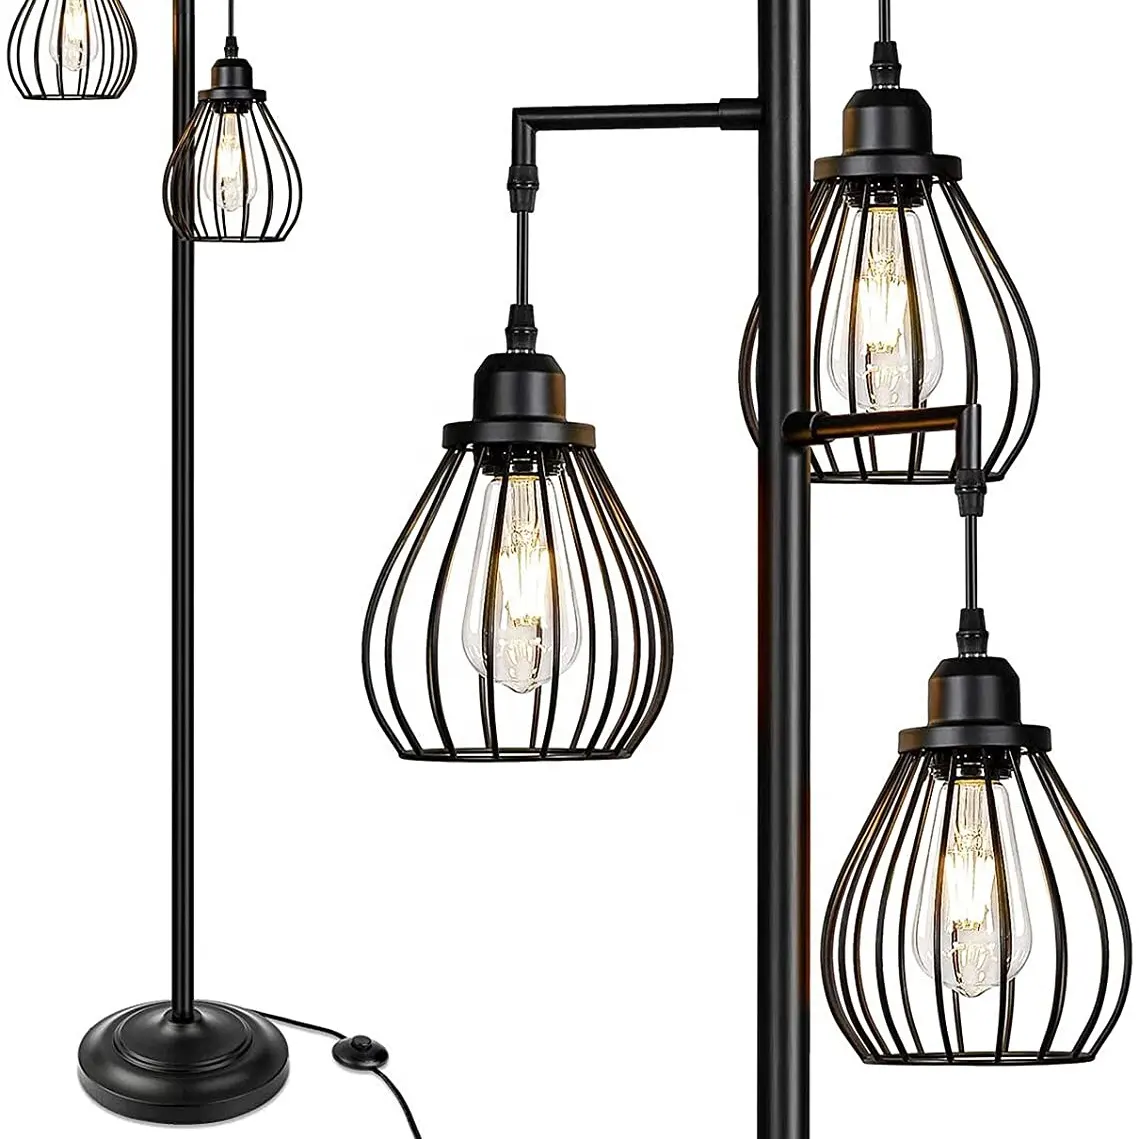 Baum Stehlampe mit 3 eleganten Teardrop Käfig kopf ST58 Edison LED-Lampen Robuster Sockel Hohe Vintage Pole Light Ideal für Bauernhaus